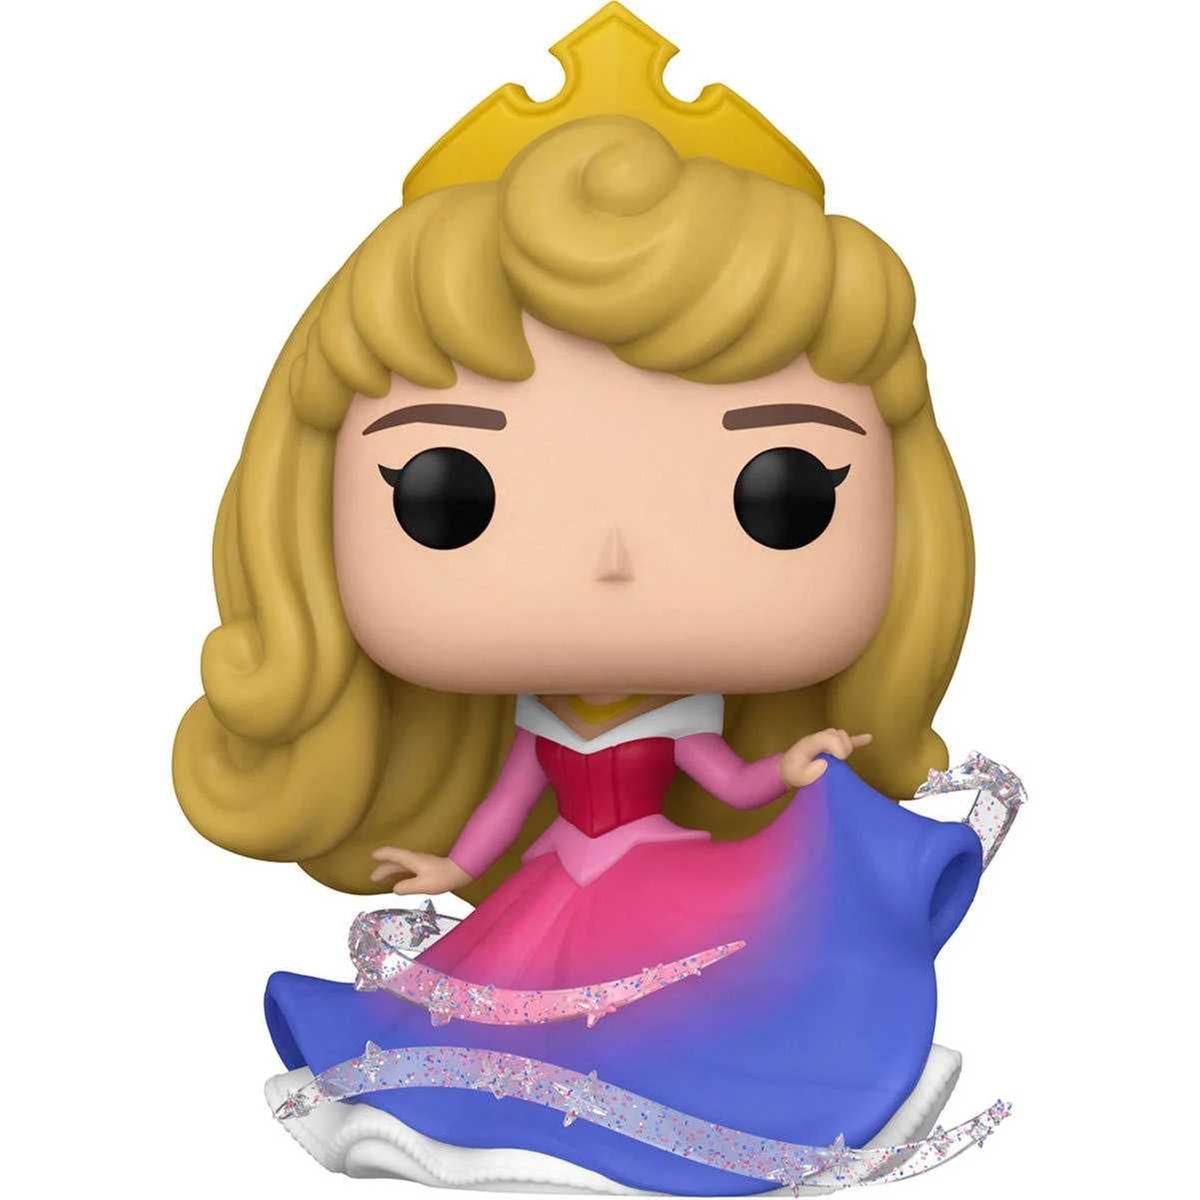 Funko - Figura colecionável Disney 100 anos: Princesa Aurora em vinil, FUNKO